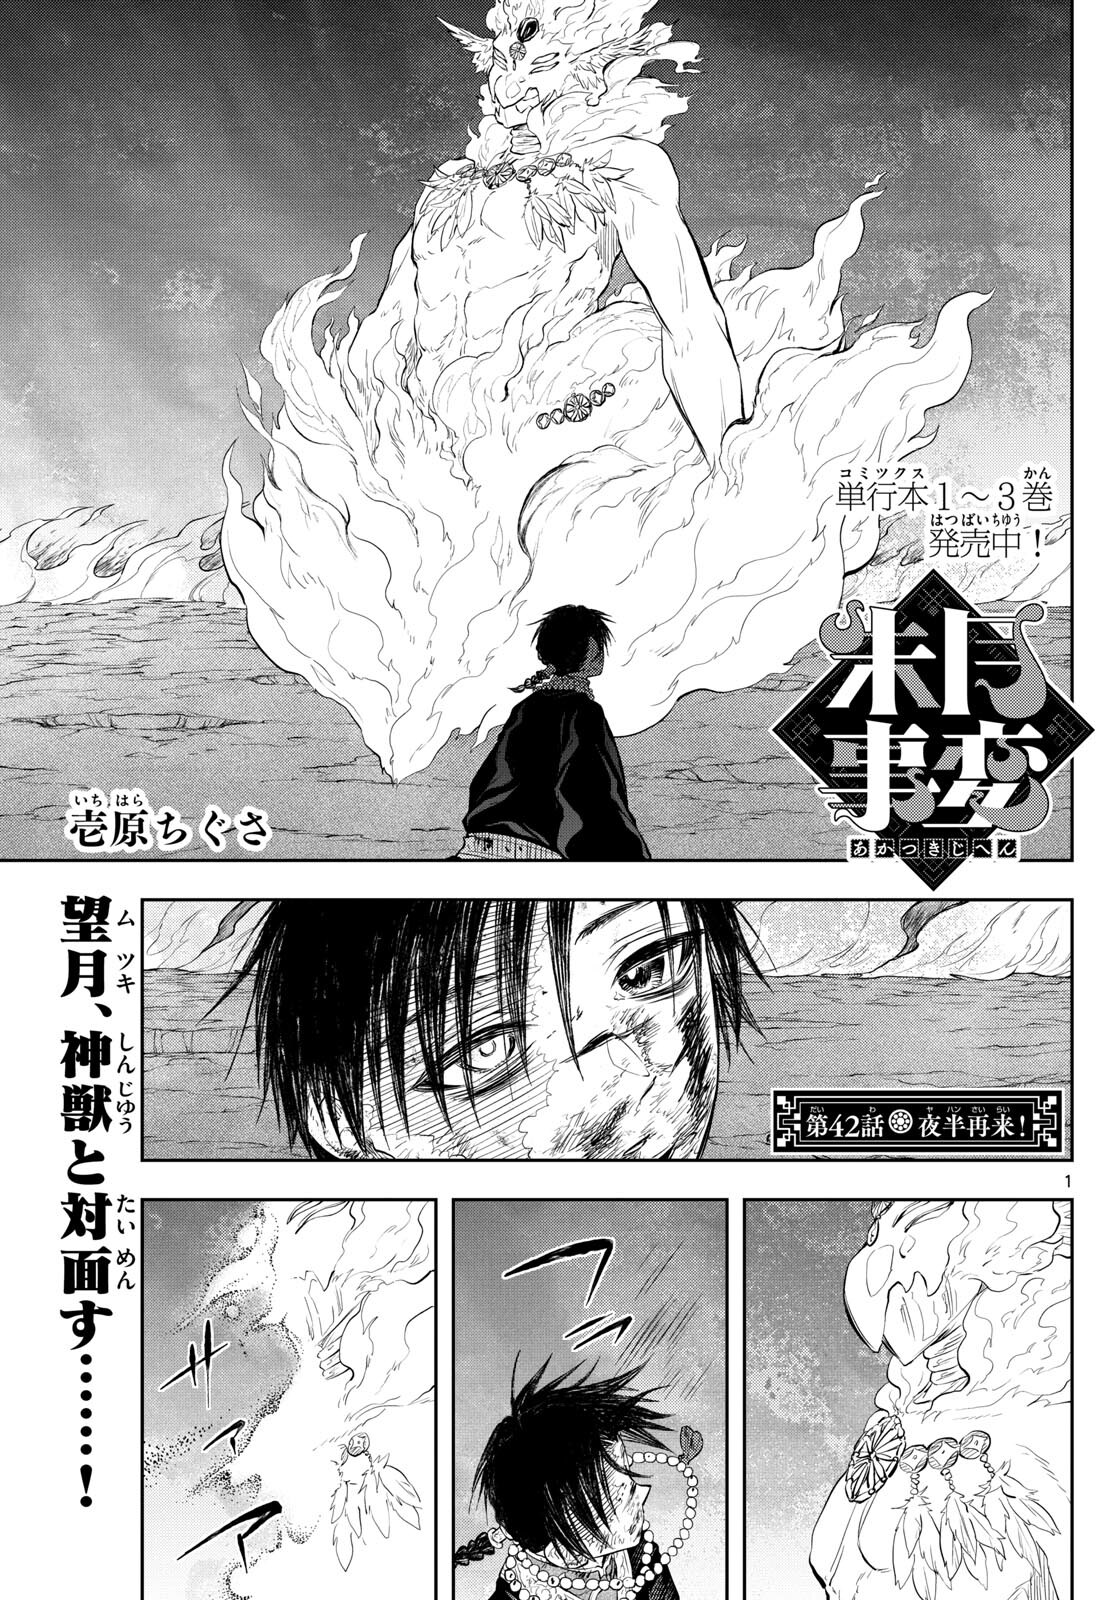 Akatsuki Jihen - Chapter 42 - Page 1